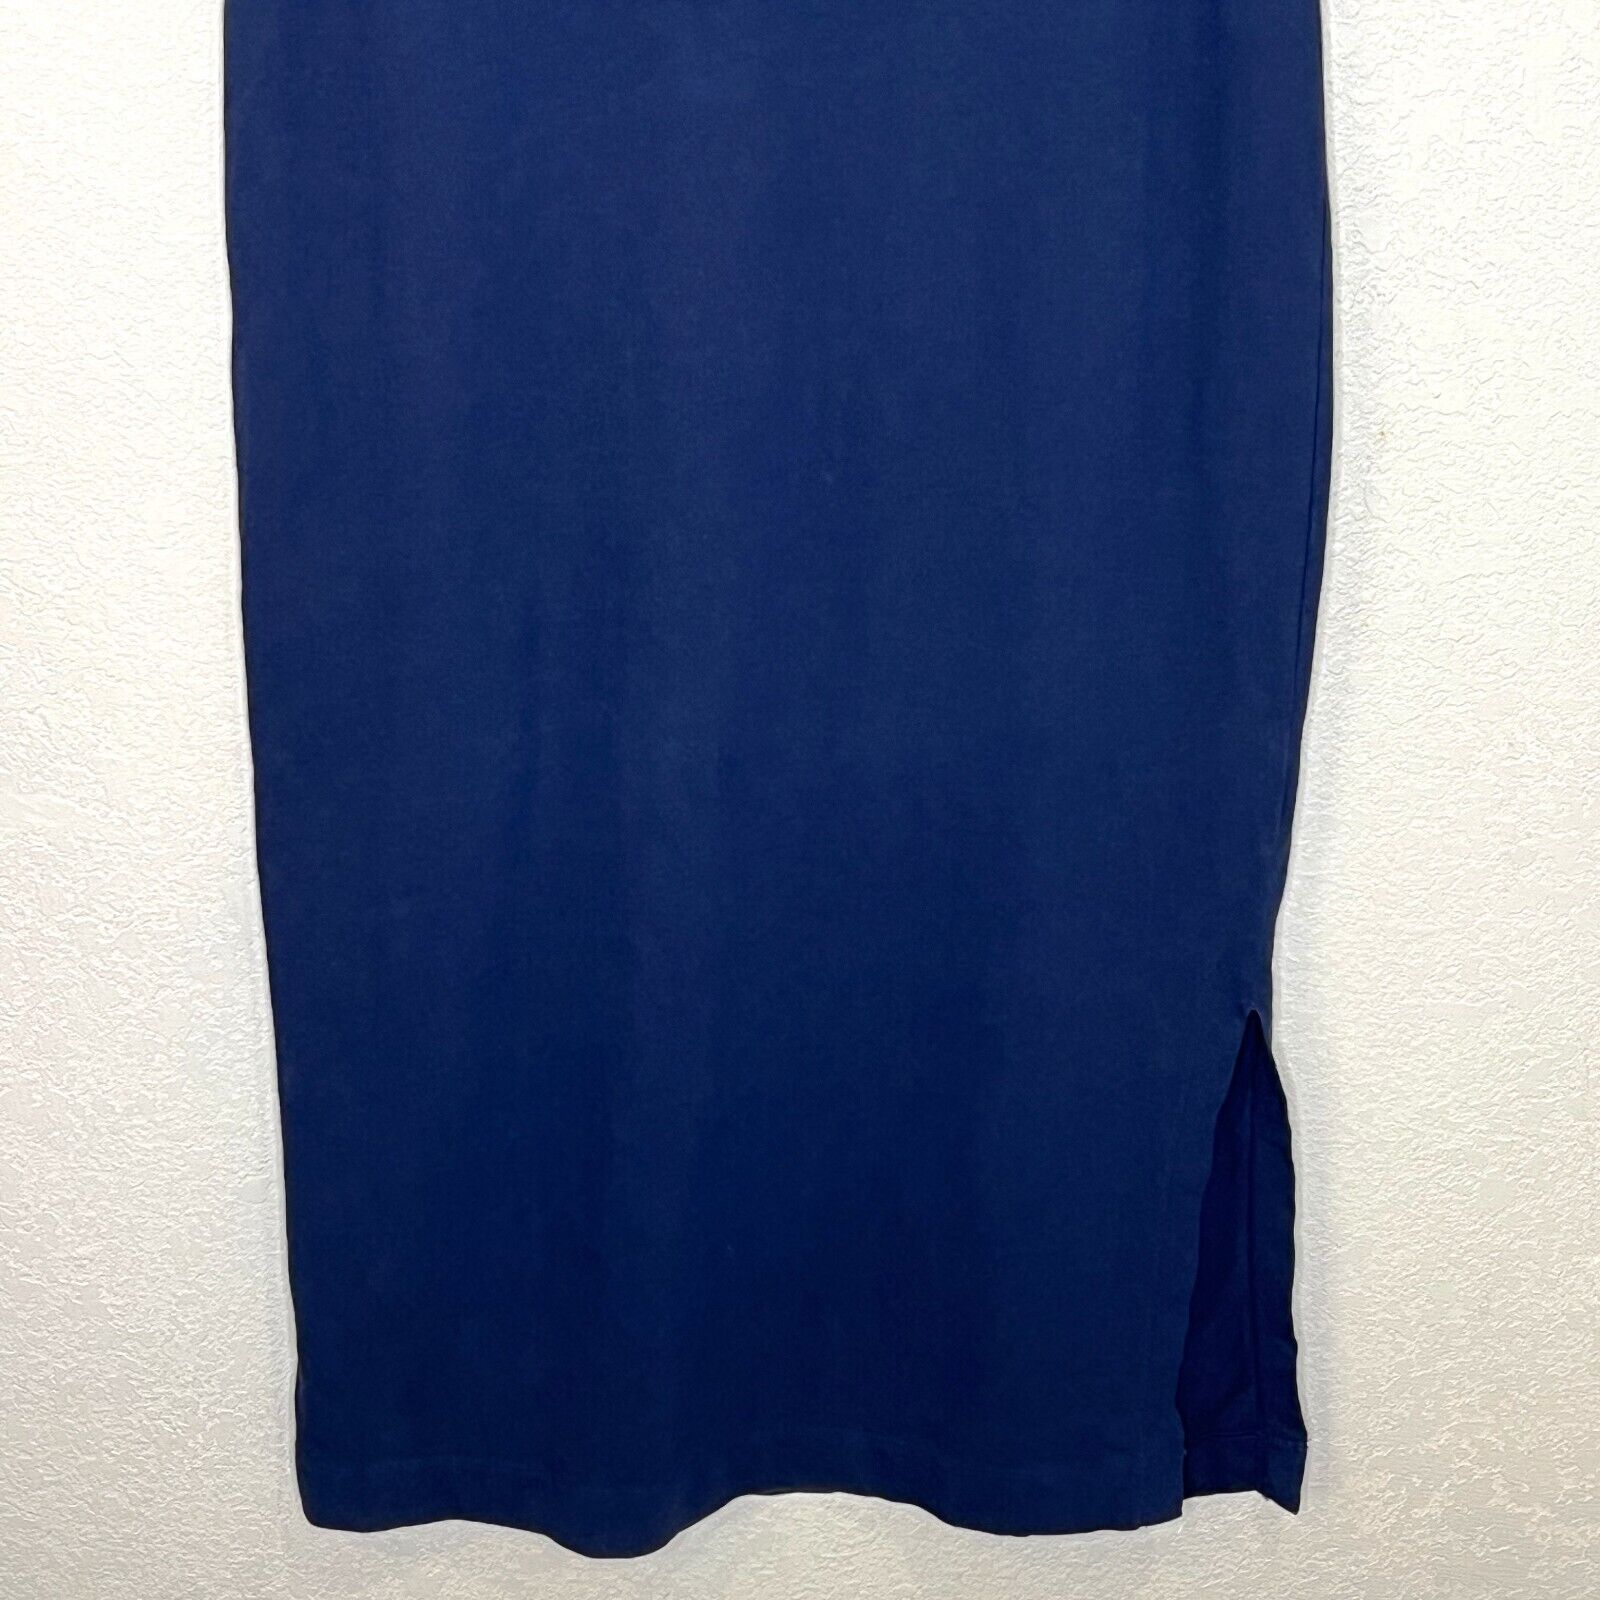 Everlane Navy Blue Sleeveless Slide Slit Midi Dress Small